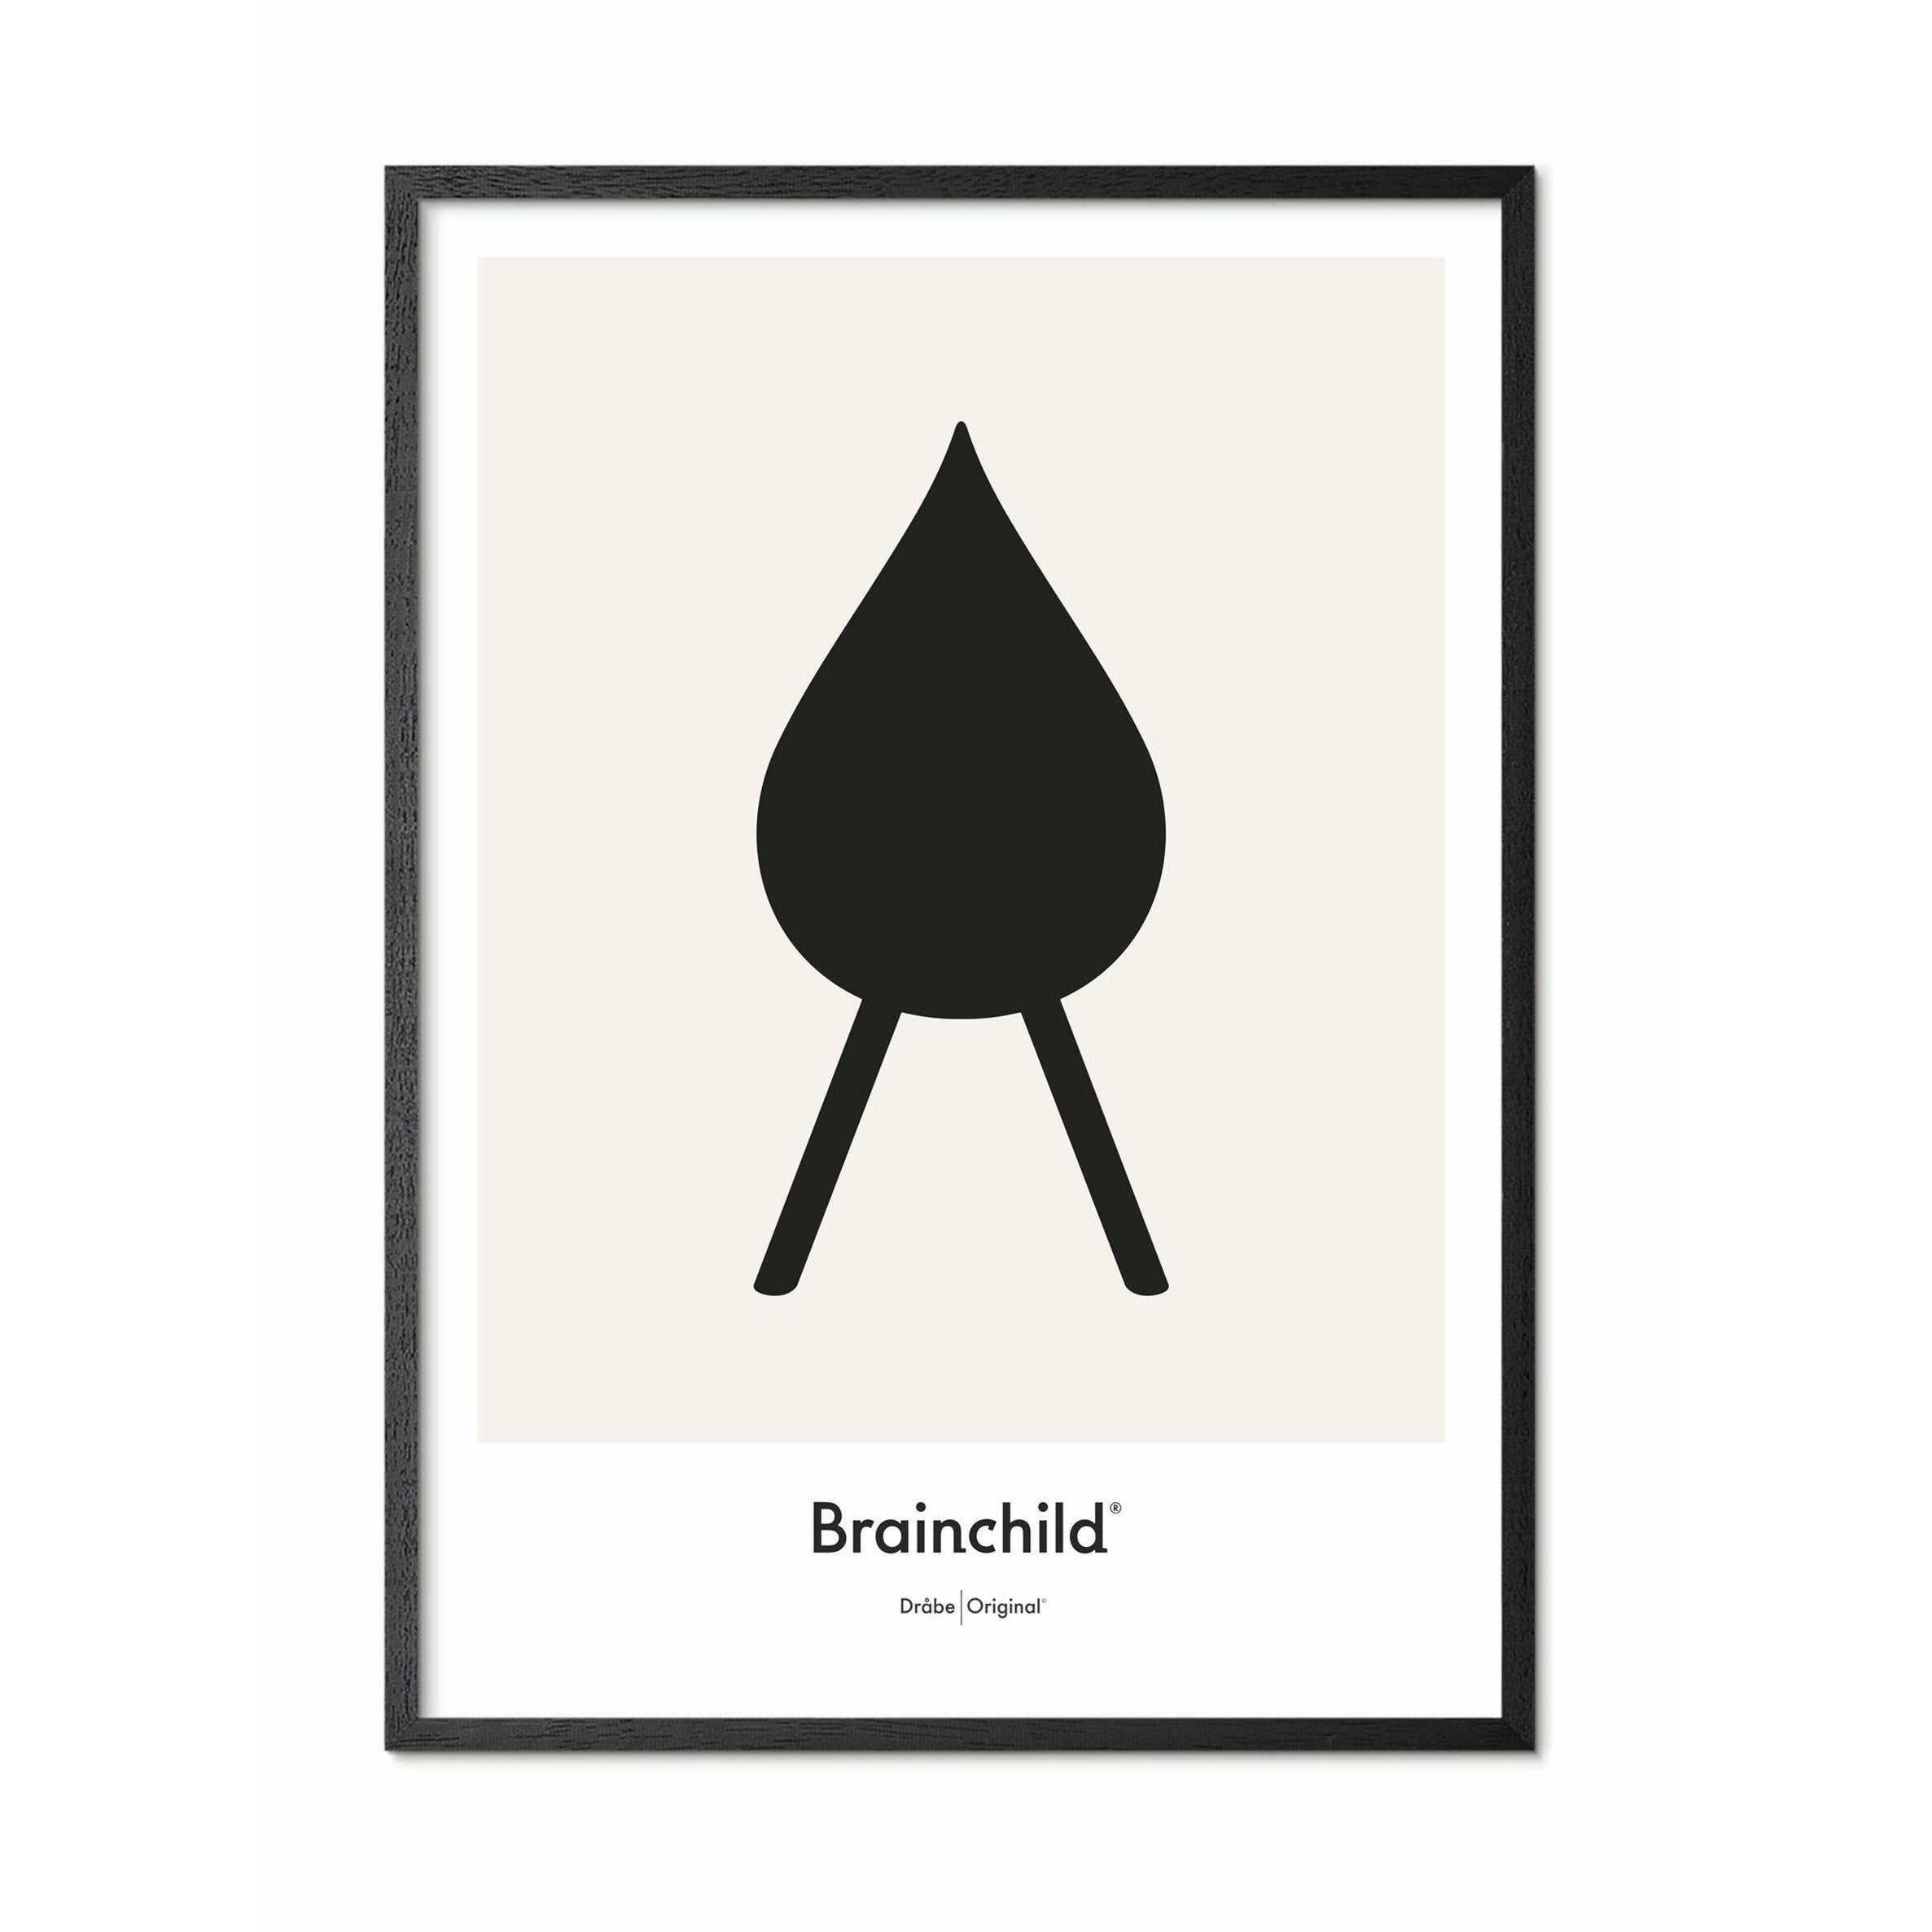 Brainchild Släpp designikon affisch, ram i svart målat trä 50x70 cm, grå